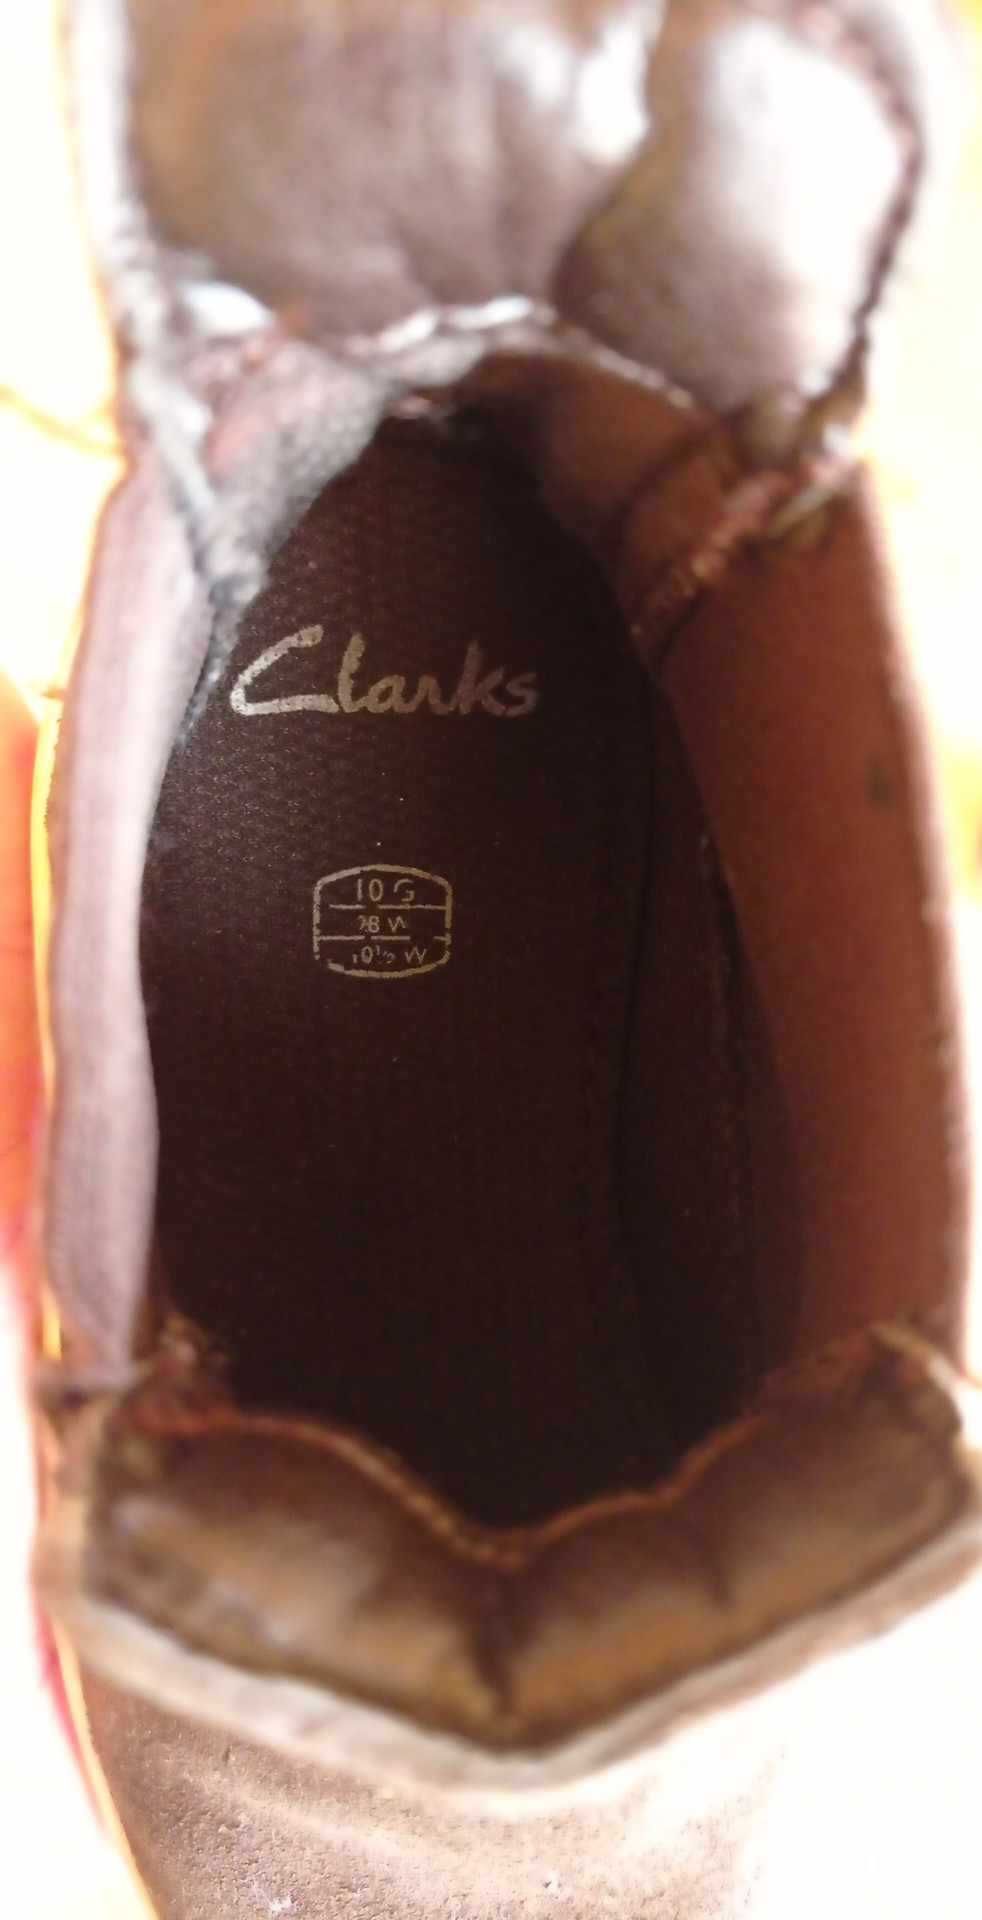 Clarks sztyblety botki trzewiki brązowe zamszowe r 28 wkładka 17cm